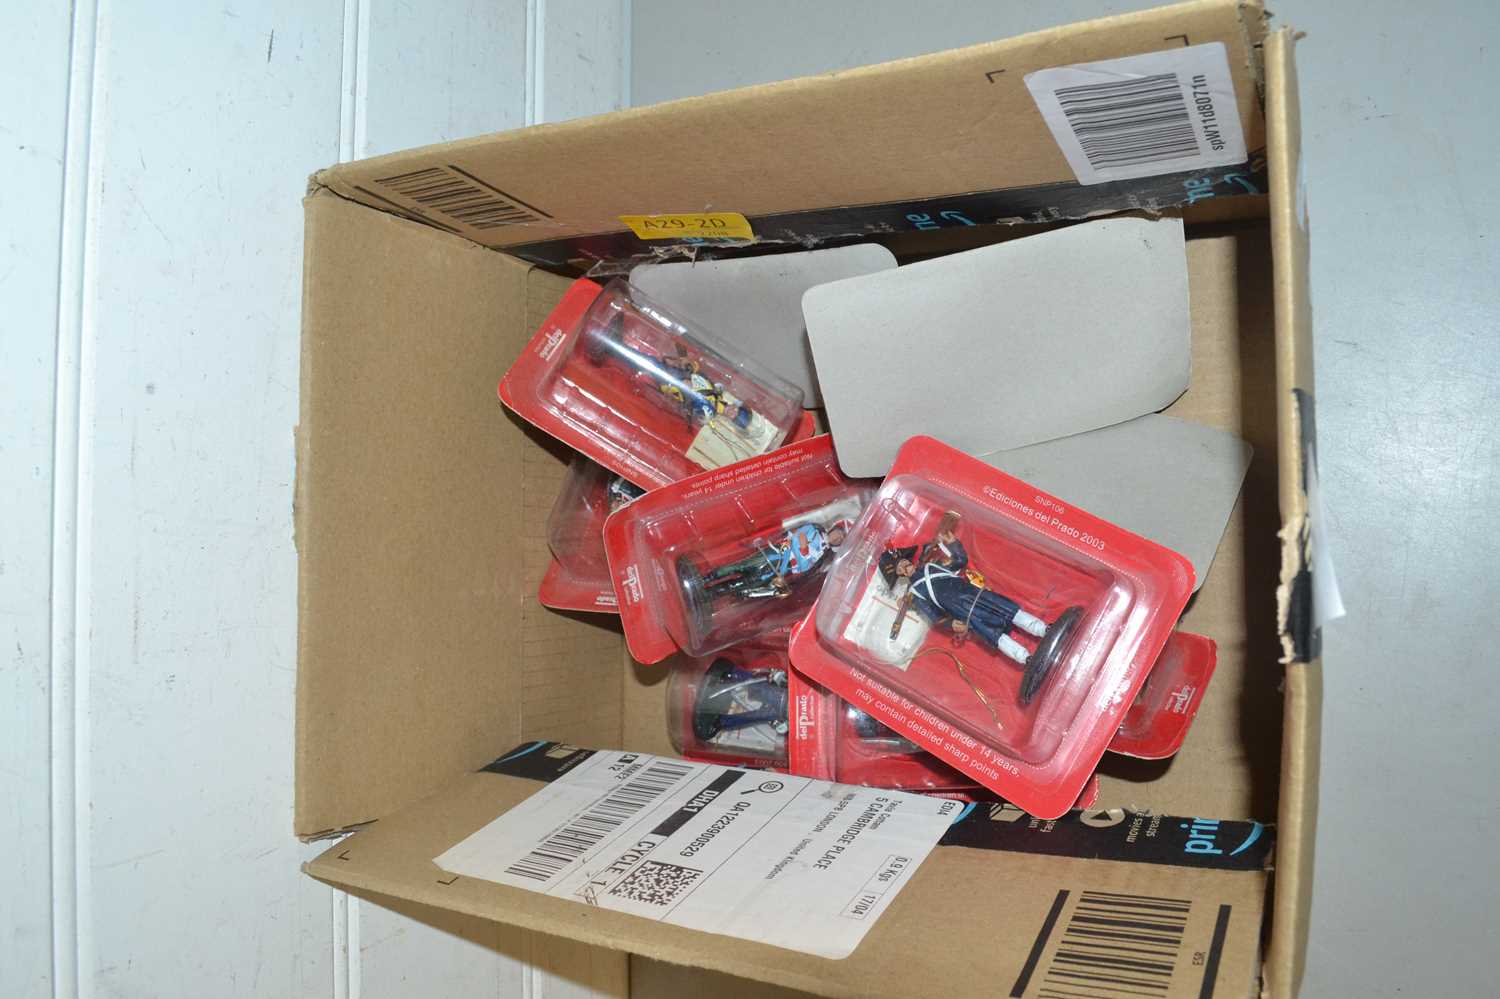 Box of Delprado toy soldiers